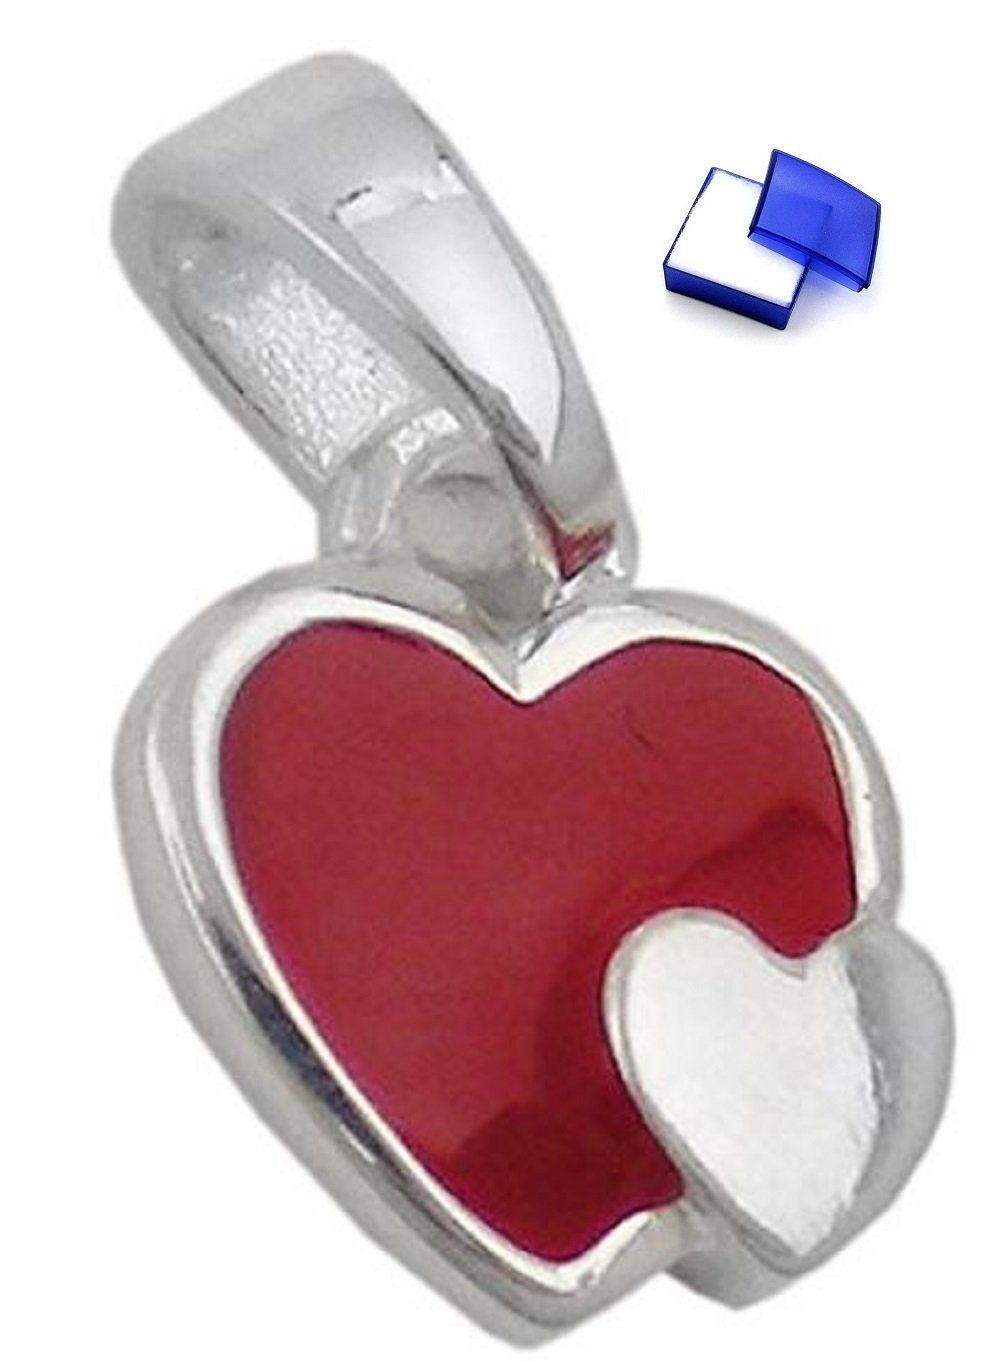 unbespielt Kettenanhänger Kinder Anhänger Herzen rot-silber 925 Silber 8 x 9 mm inkl. kleiner Schmuckbox, Silberschmuck für Kinder